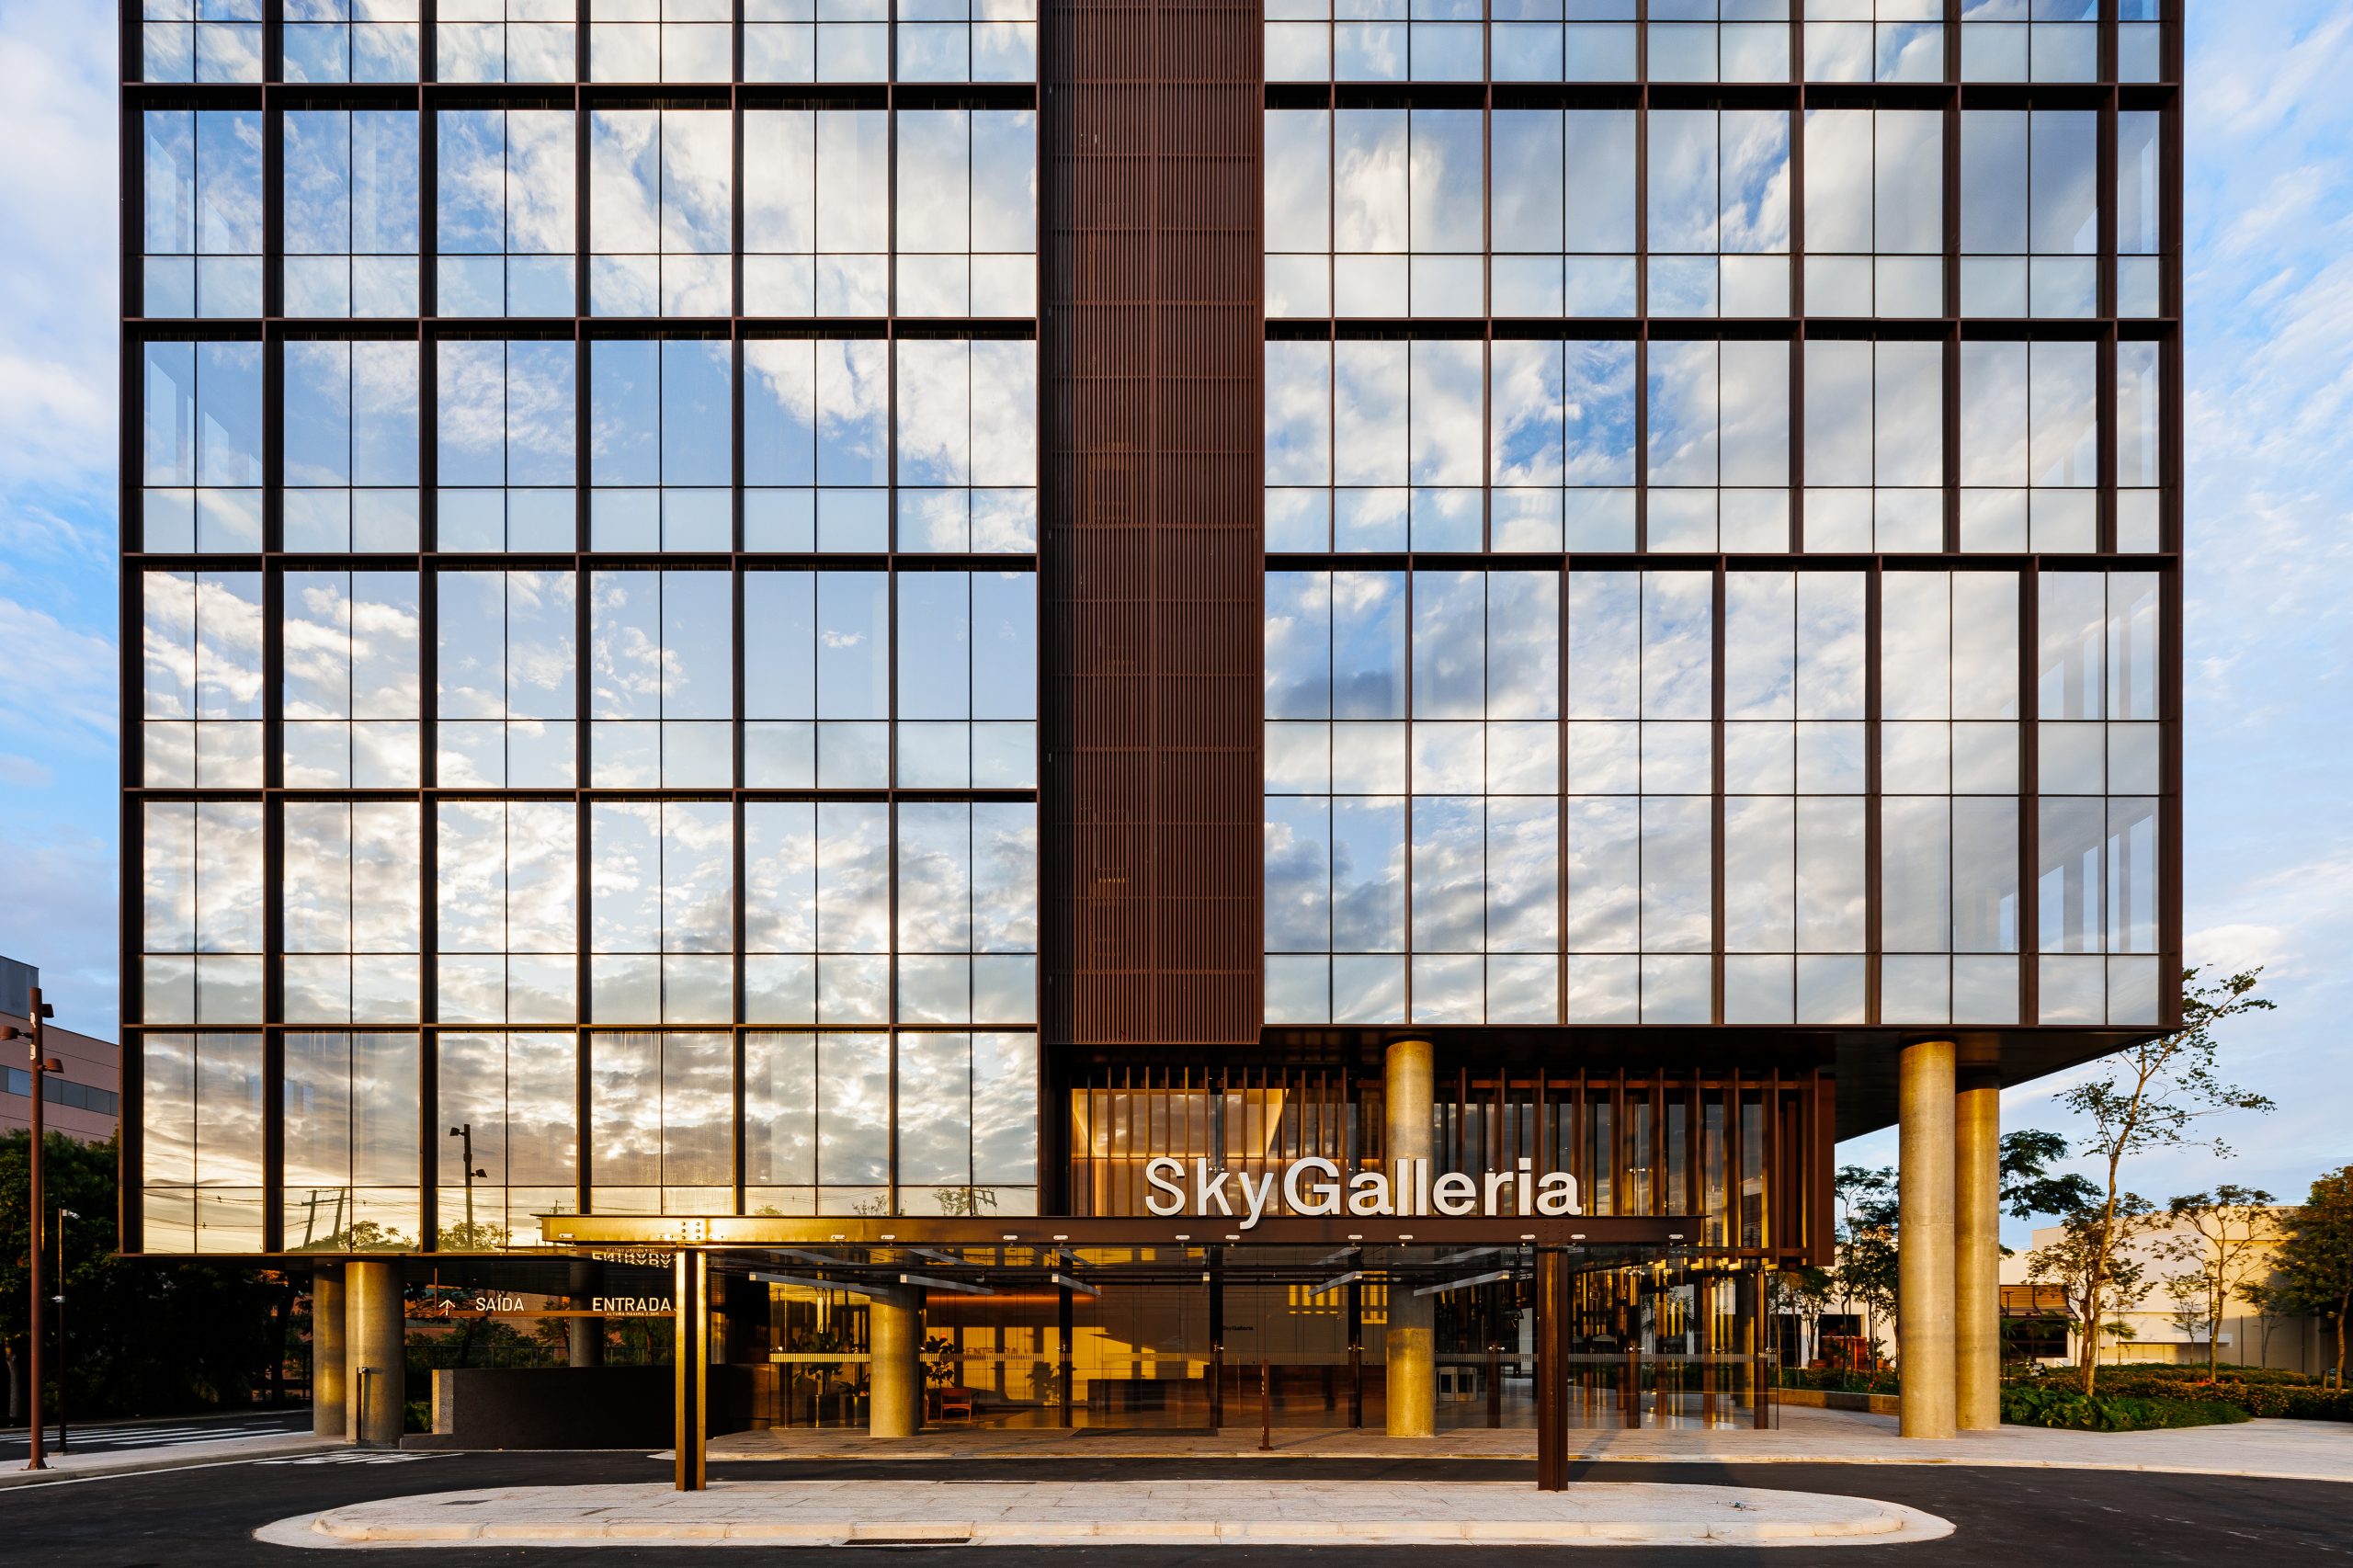 Sky Galleria – Galeria da Arquitetura